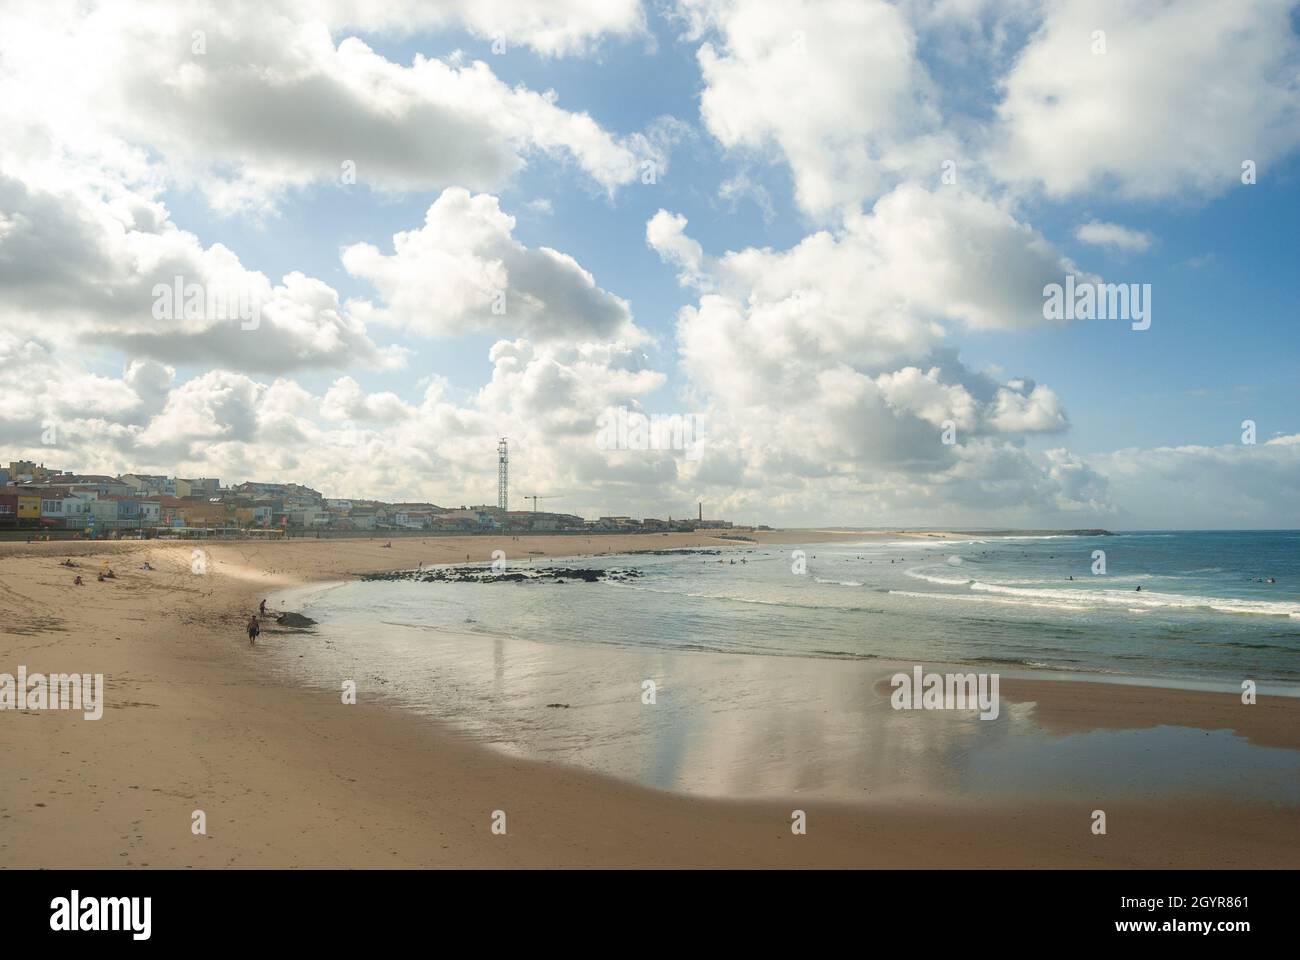 Weite Sicht auf den Meeresstrand bei Ebbe Wolken spiegeln sich im nassen Sand - Espinho, Portugal Stockfoto